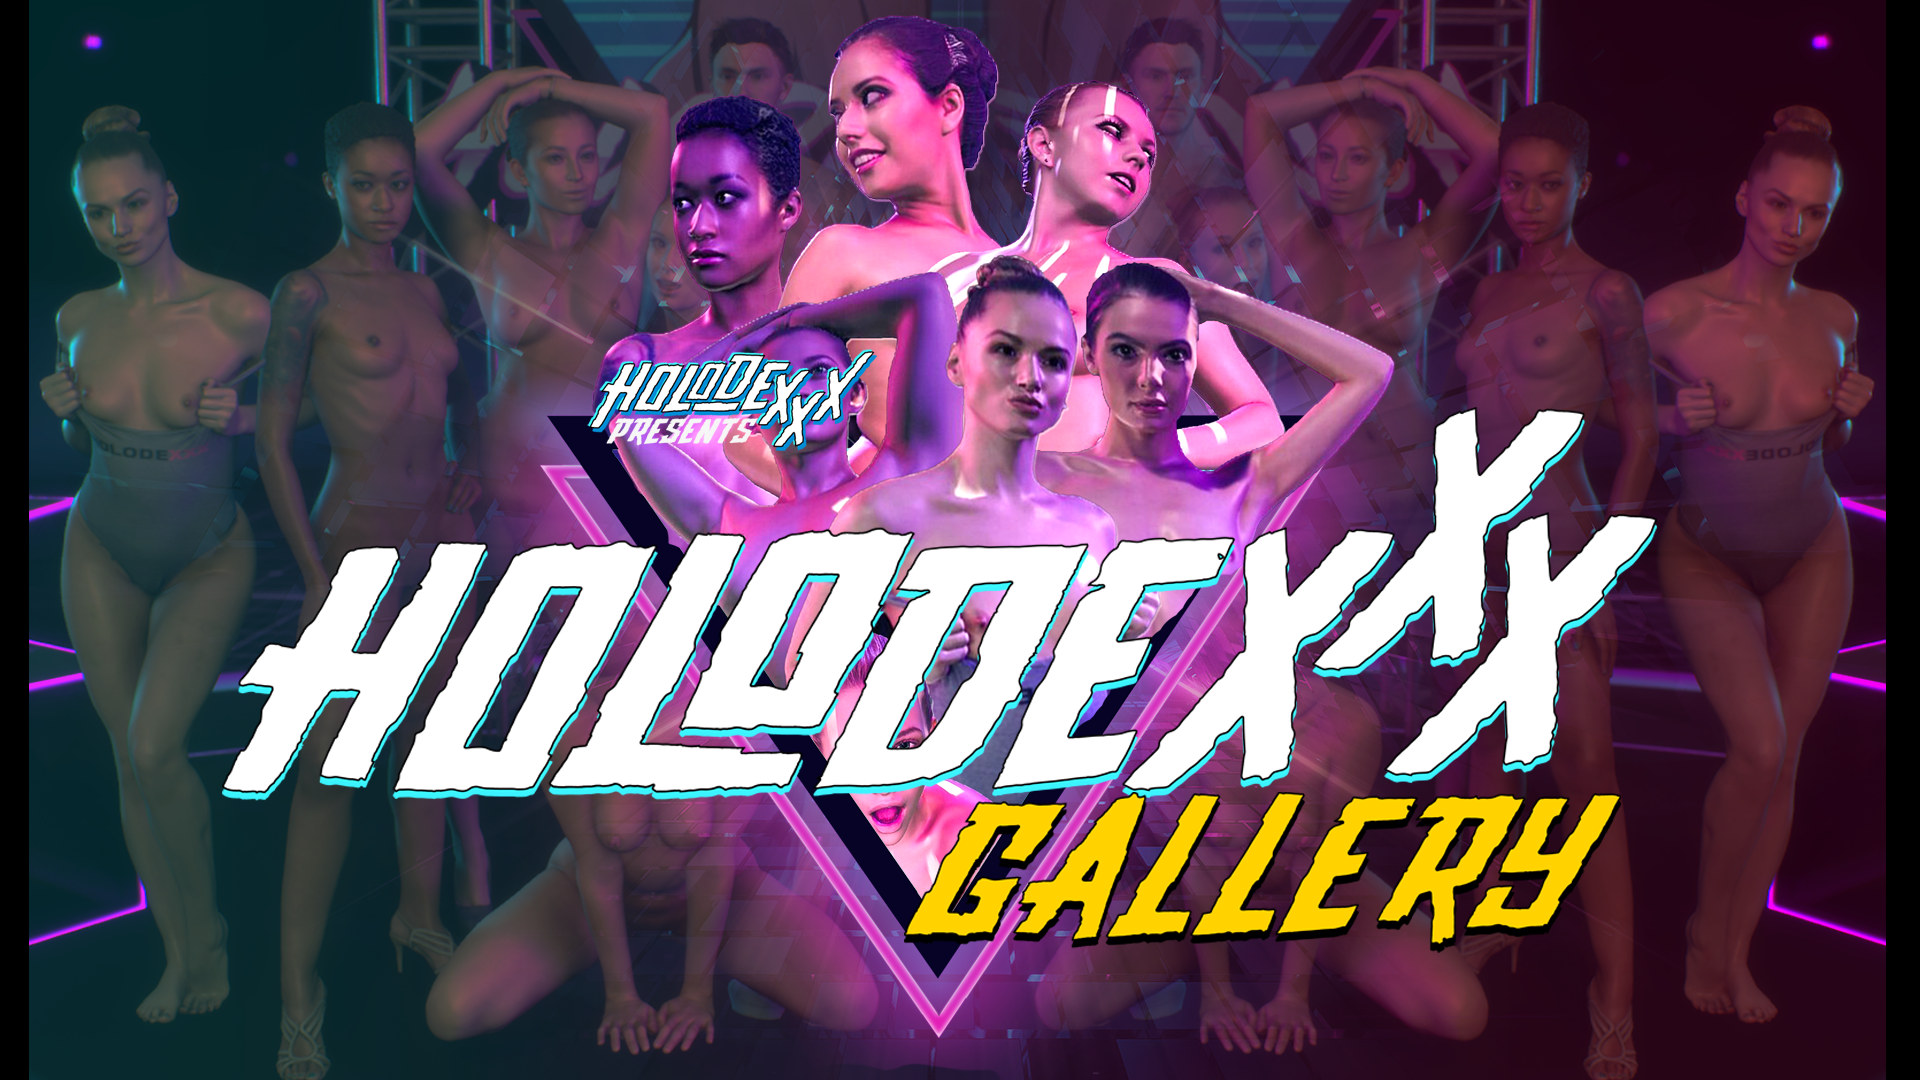 Holodexxx: Gallery